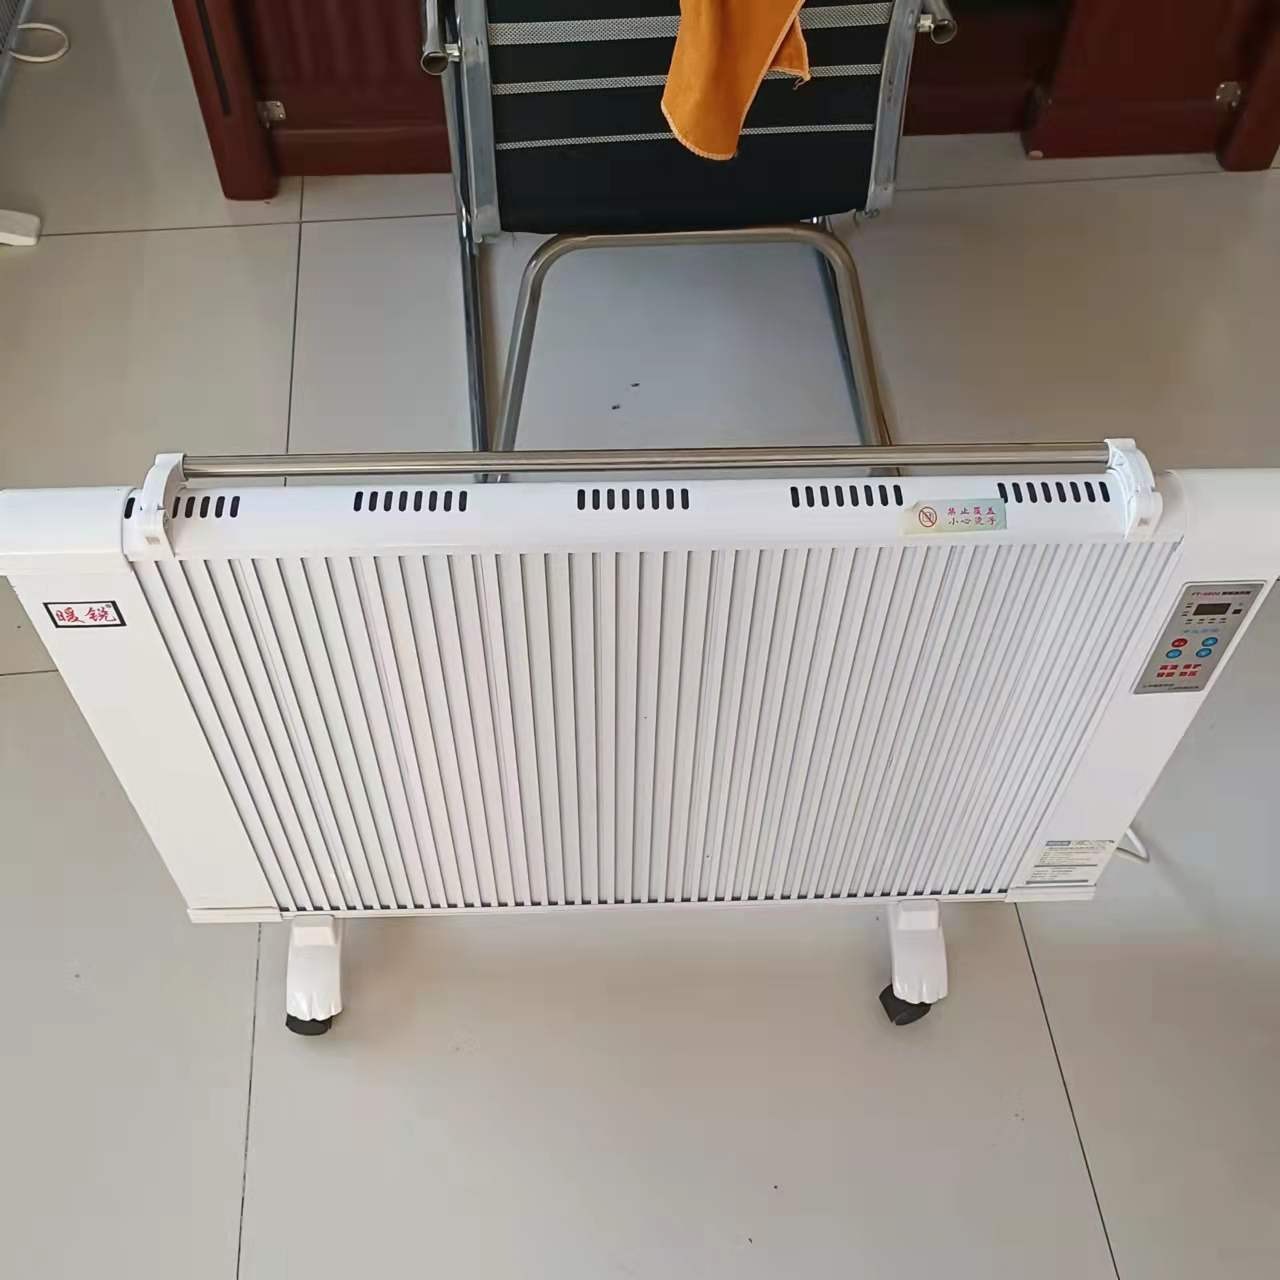 碳纤维电暖器 暖硕 数显挂式取暖器 NS-2远红外电暖器 厂家销售